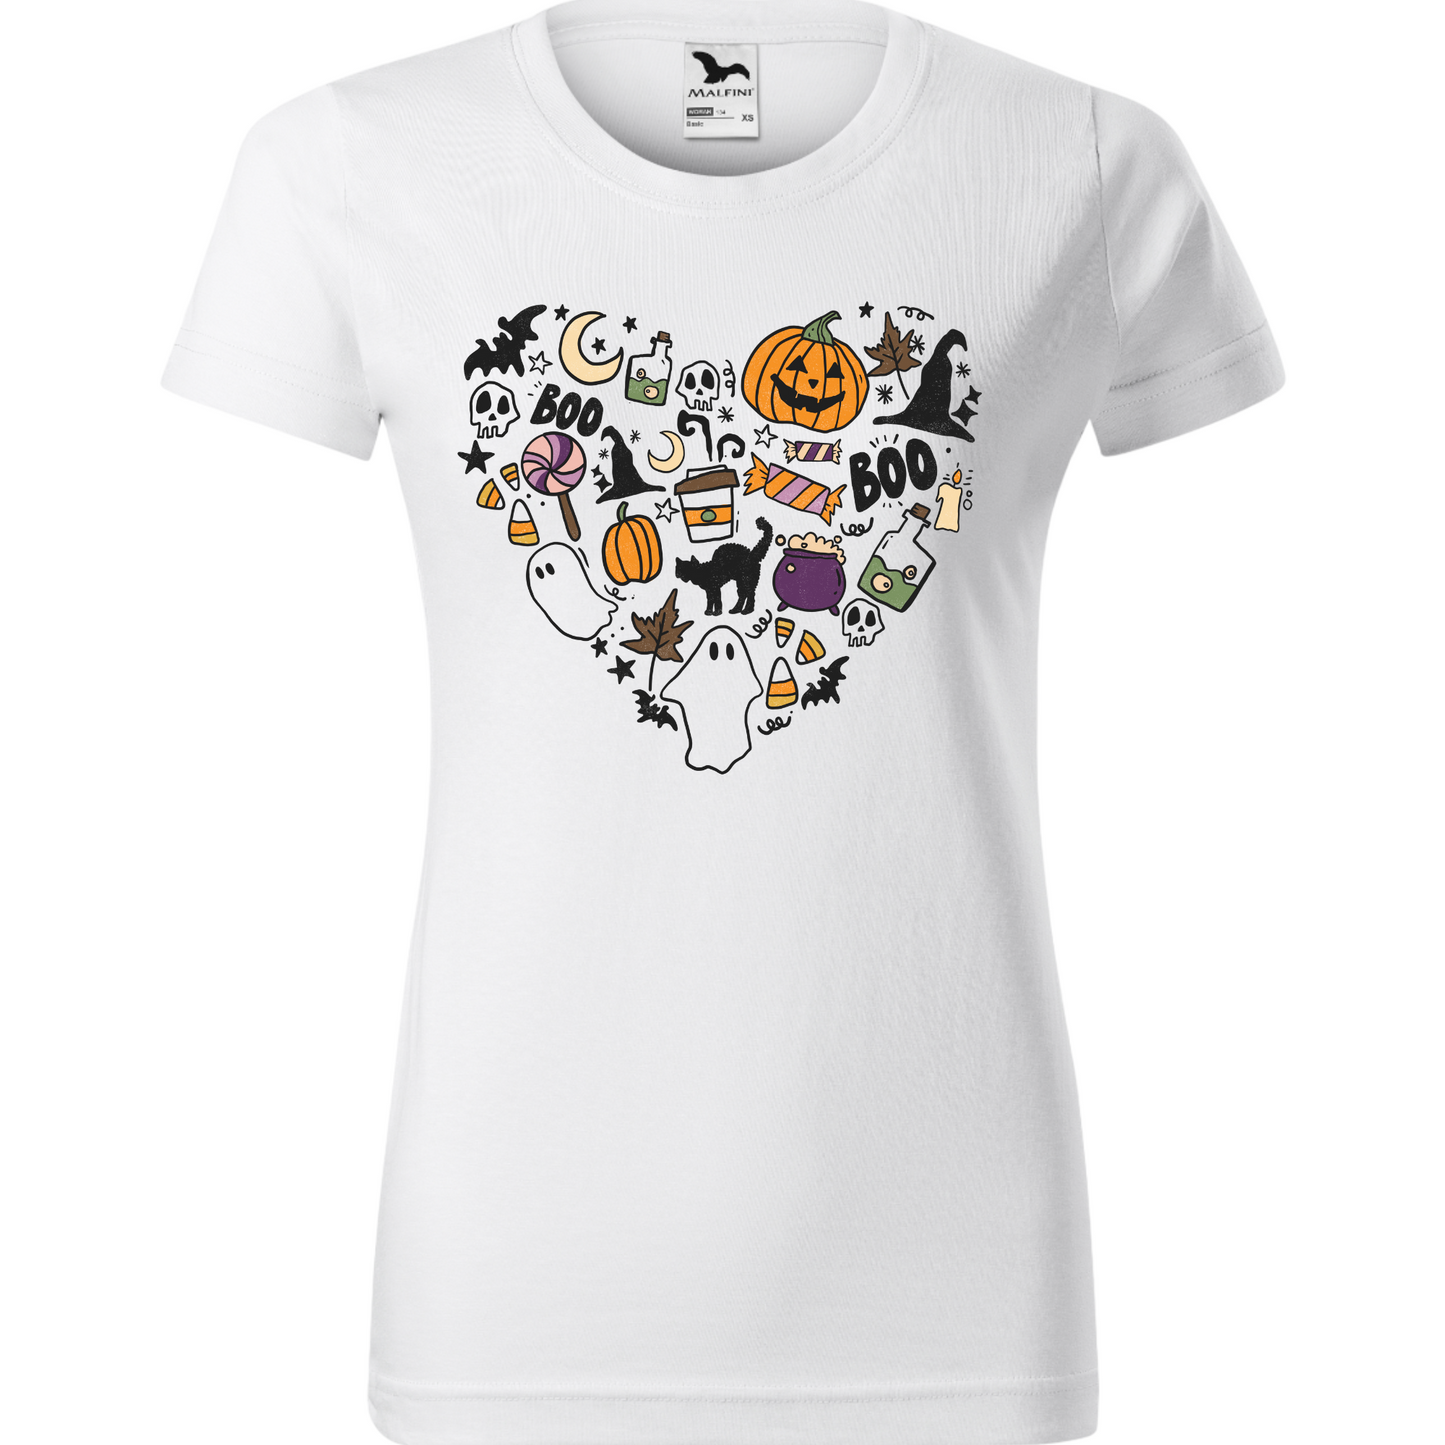 Tricou de Halloween cu o inimă creată din simboluri tematice, incluzând dovleci, lilieci și păianjeni.